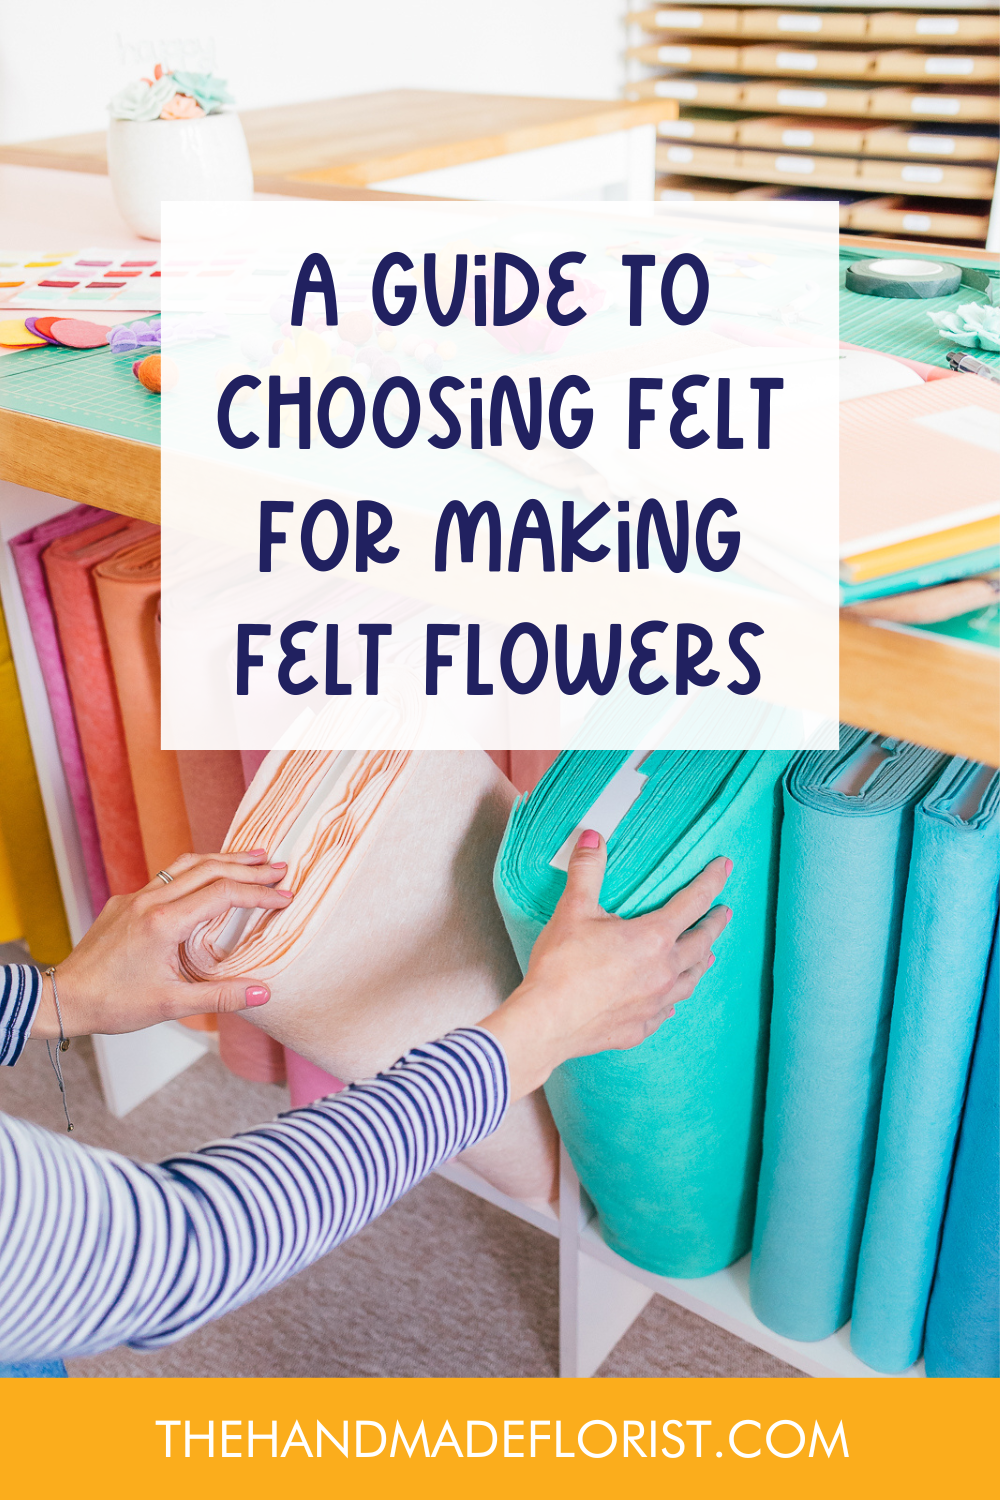 A guide to choosing felt for making felt flowers